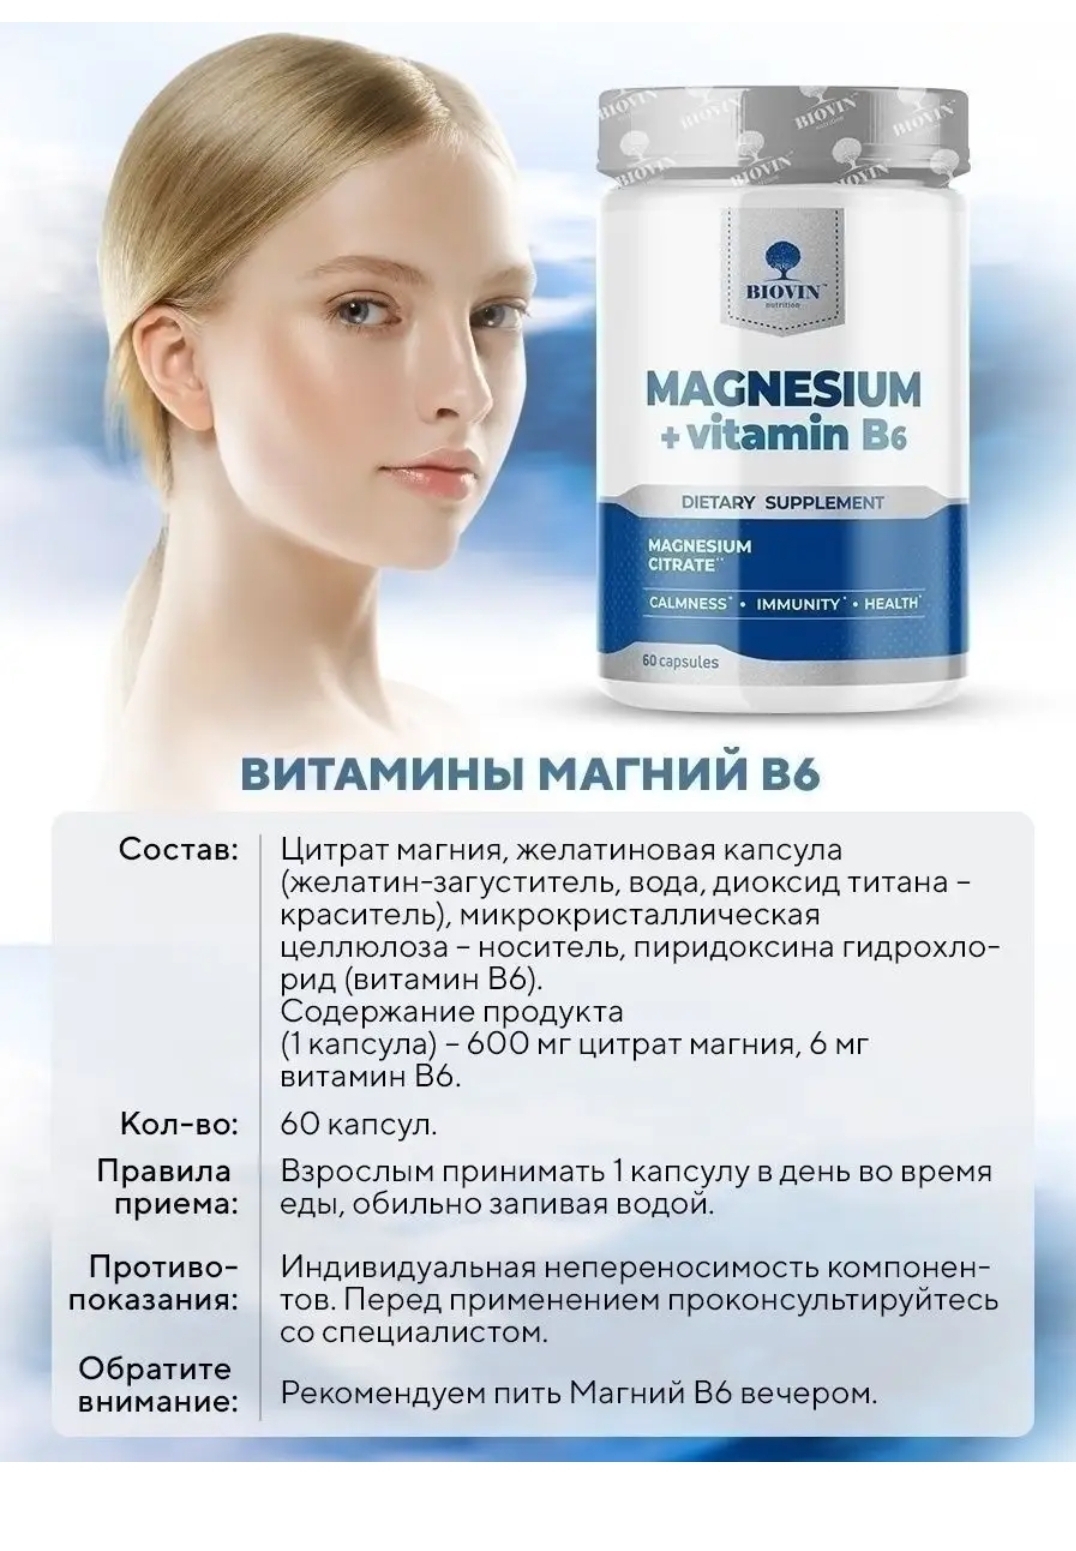 Как правильно принимать витамины магний. BIOVIN магний. Magnesium Vitamin b6 BIOVIN. Magnesium + Vitamin b6 капсулы. Витамины Magnesium Citrate BIOVIN.